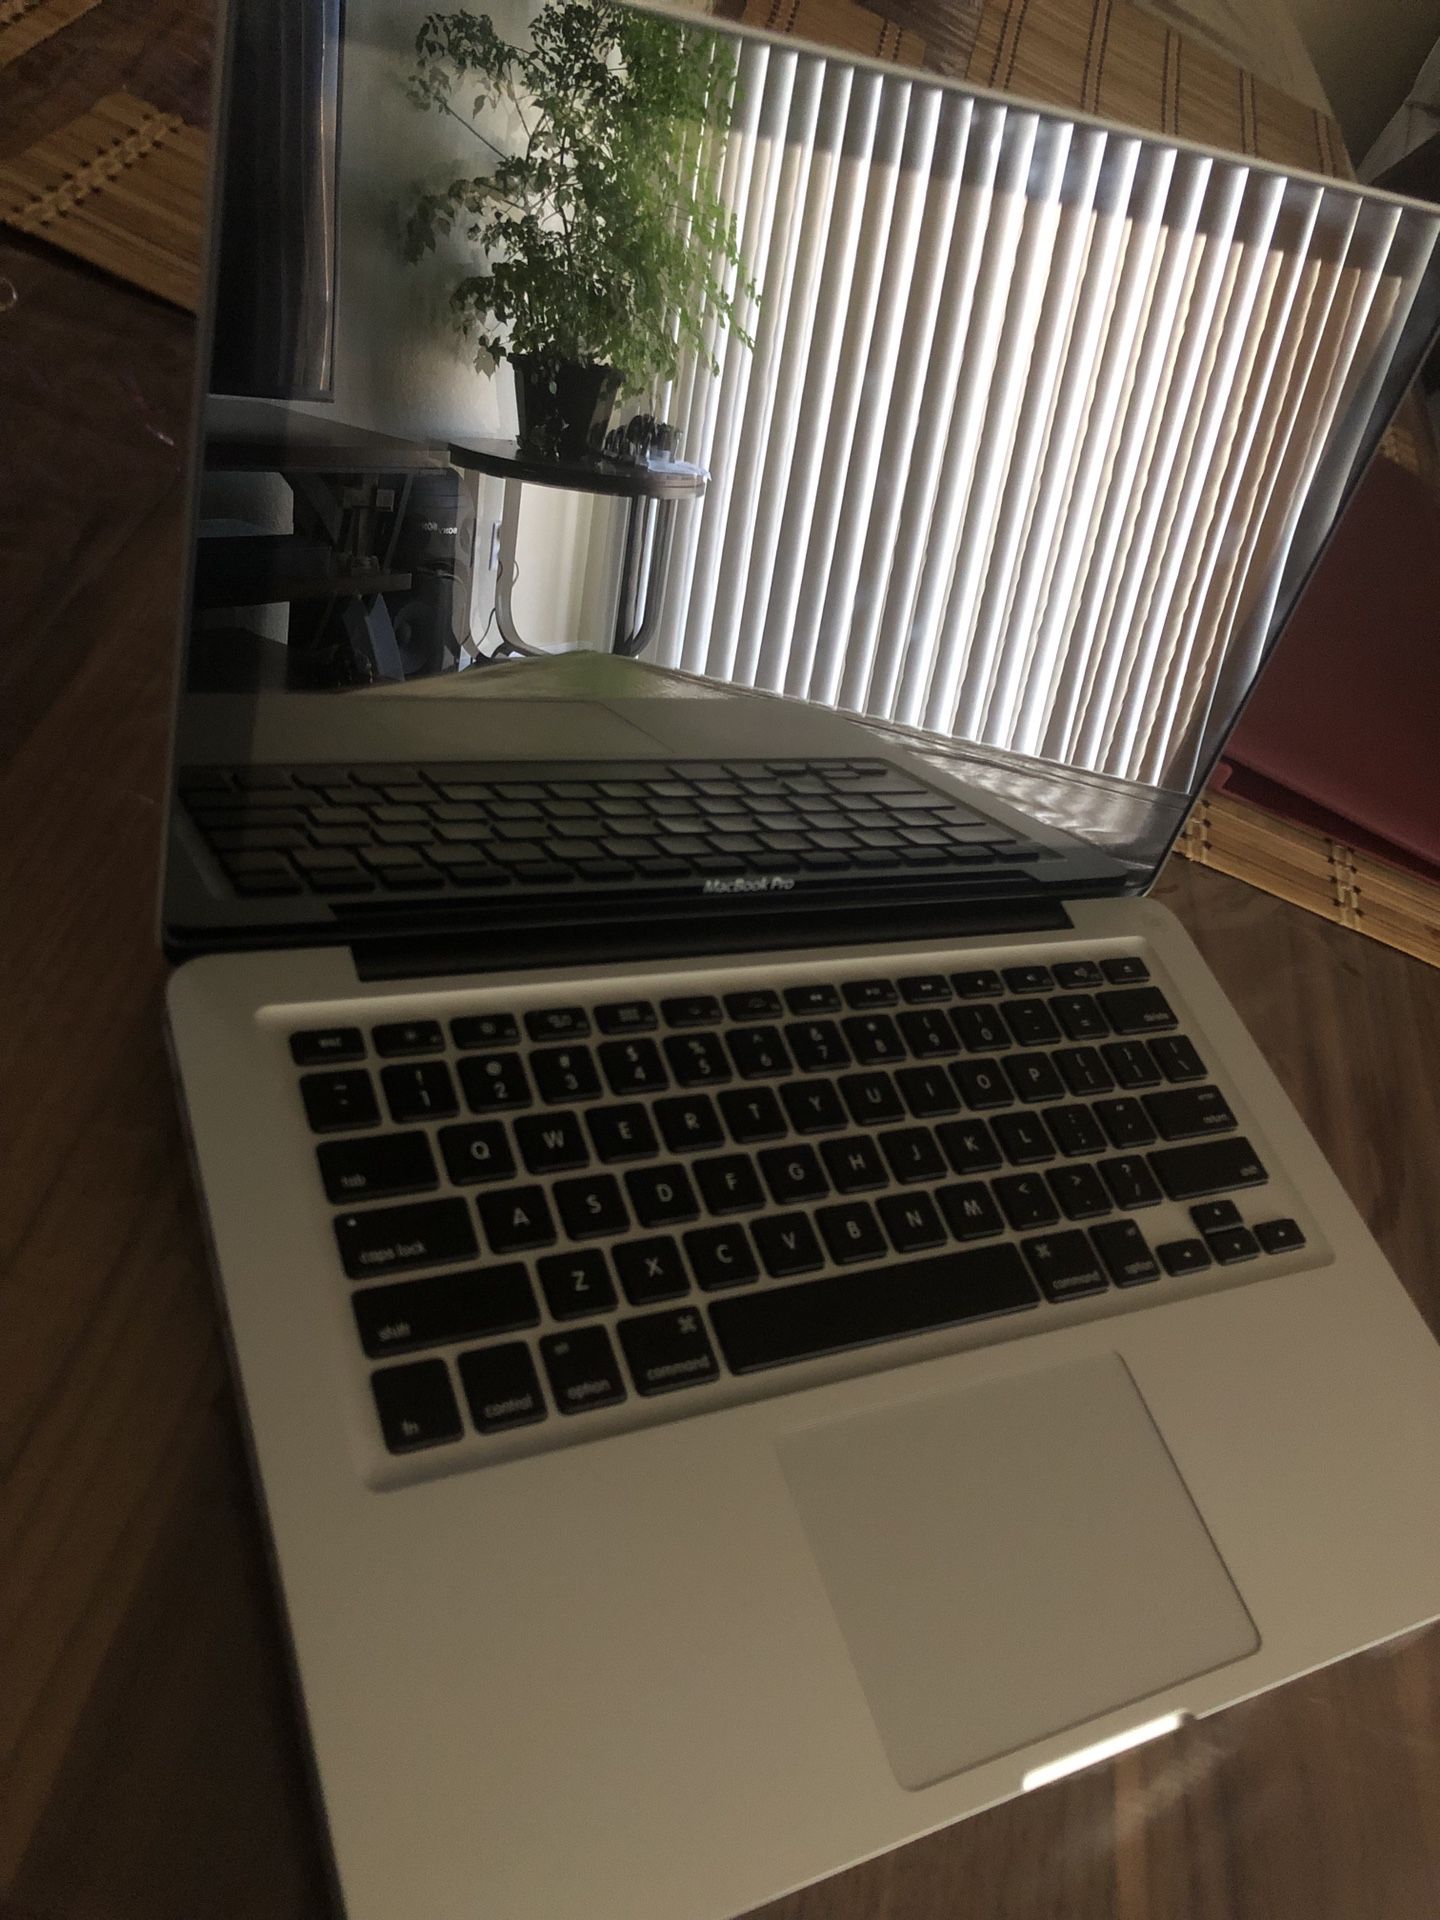 Excellent MacBook Pro (13-inch, Mid 2012)